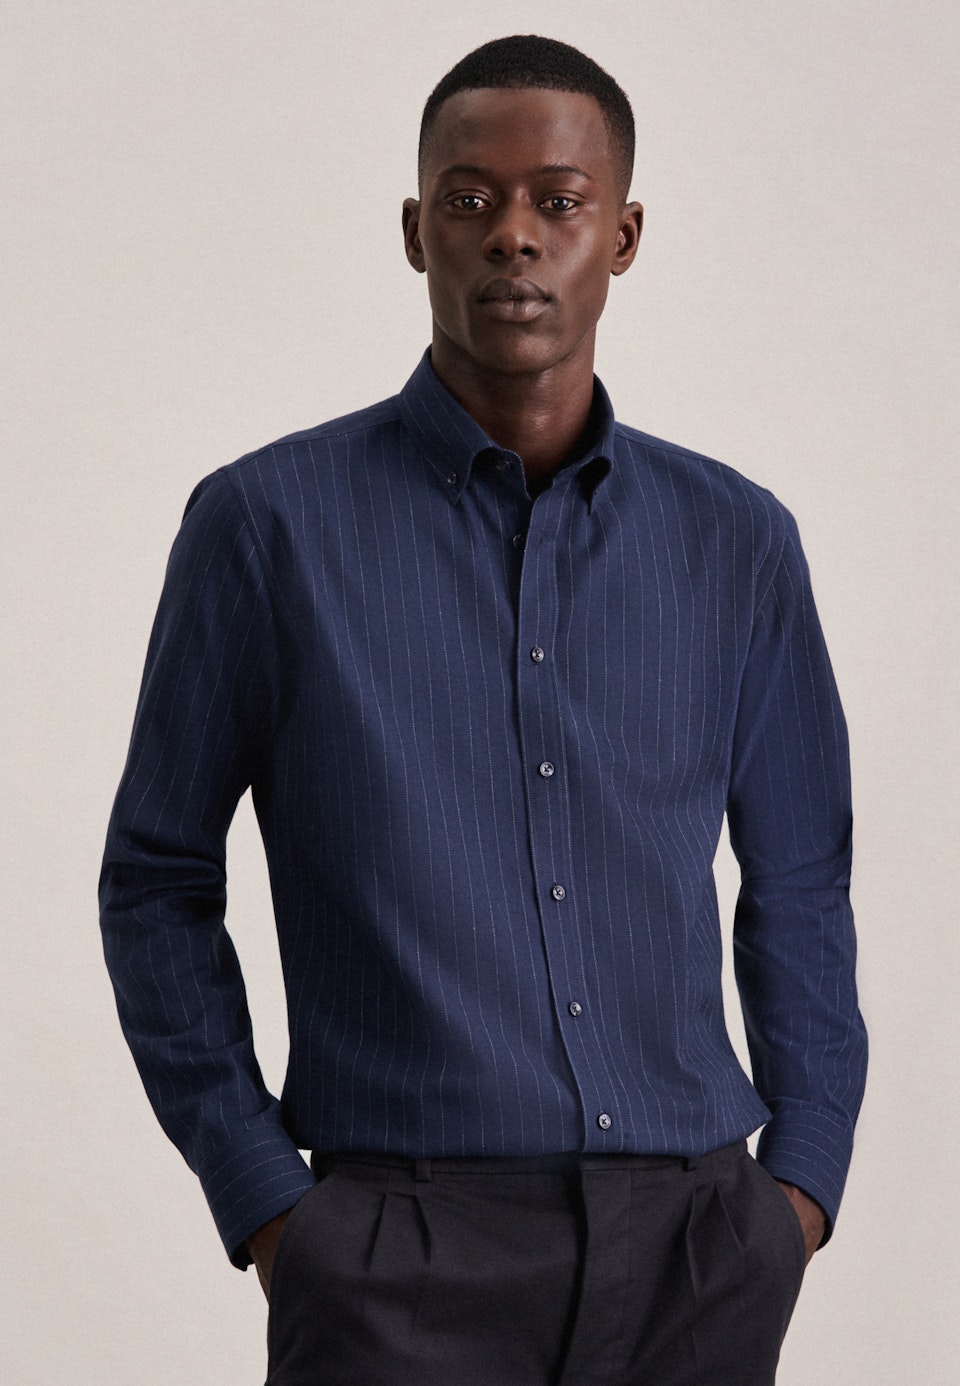 Bügelleichtes Twill Business Hemd in X-Slim mit Button-Down-Kragen in Dunkelblau |  Seidensticker Onlineshop